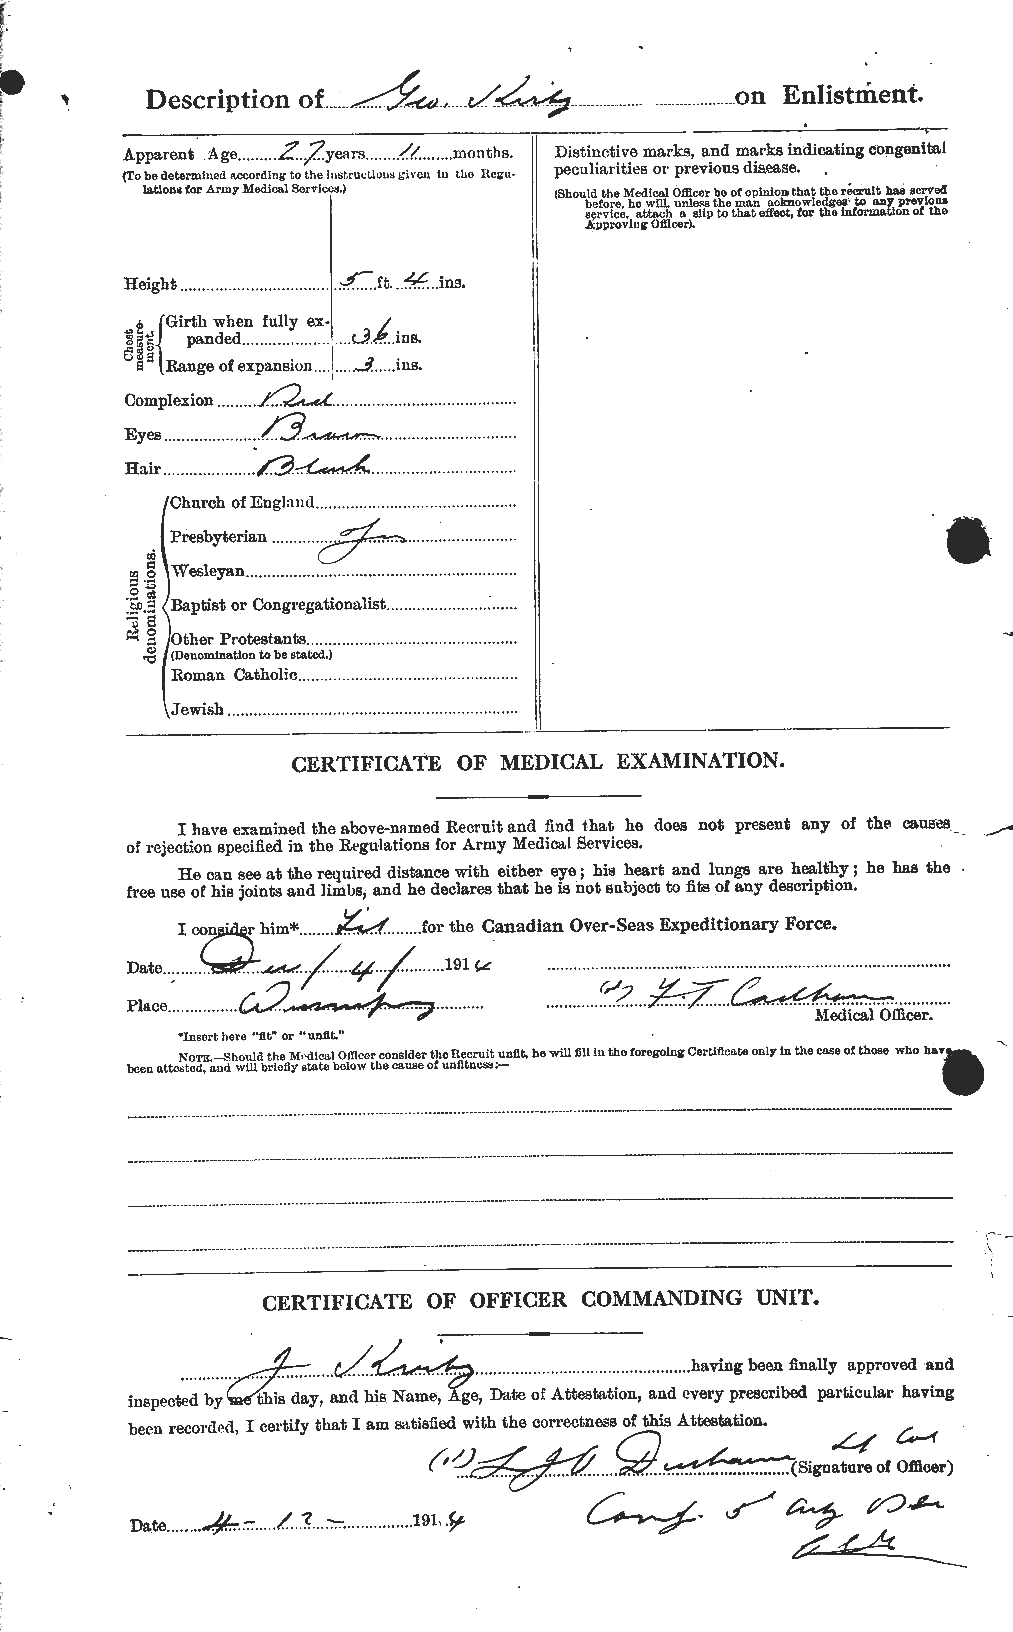 Dossiers du Personnel de la Première Guerre mondiale - CEC 691552b